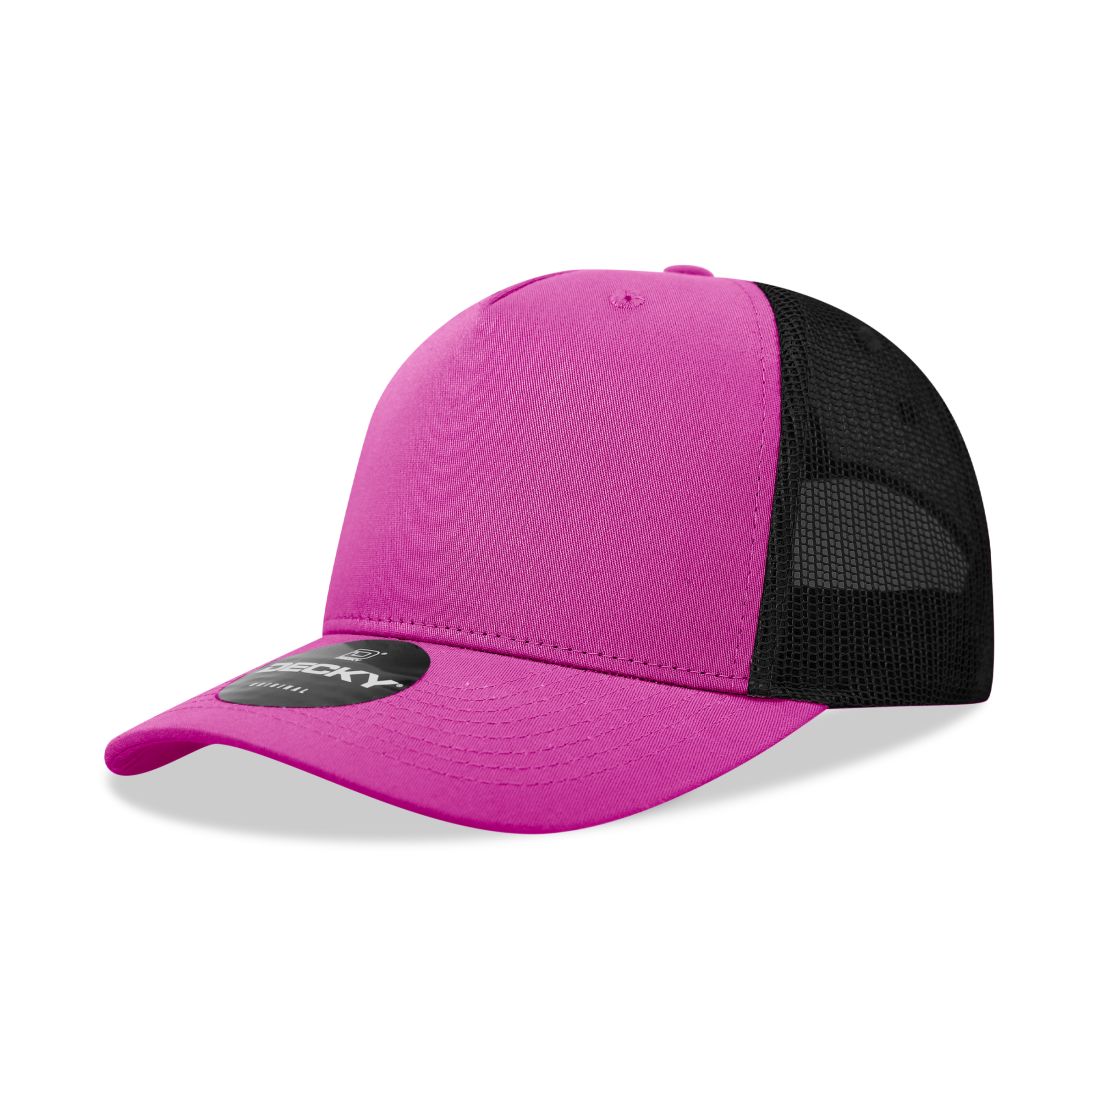 Hot Pink/Black color variant